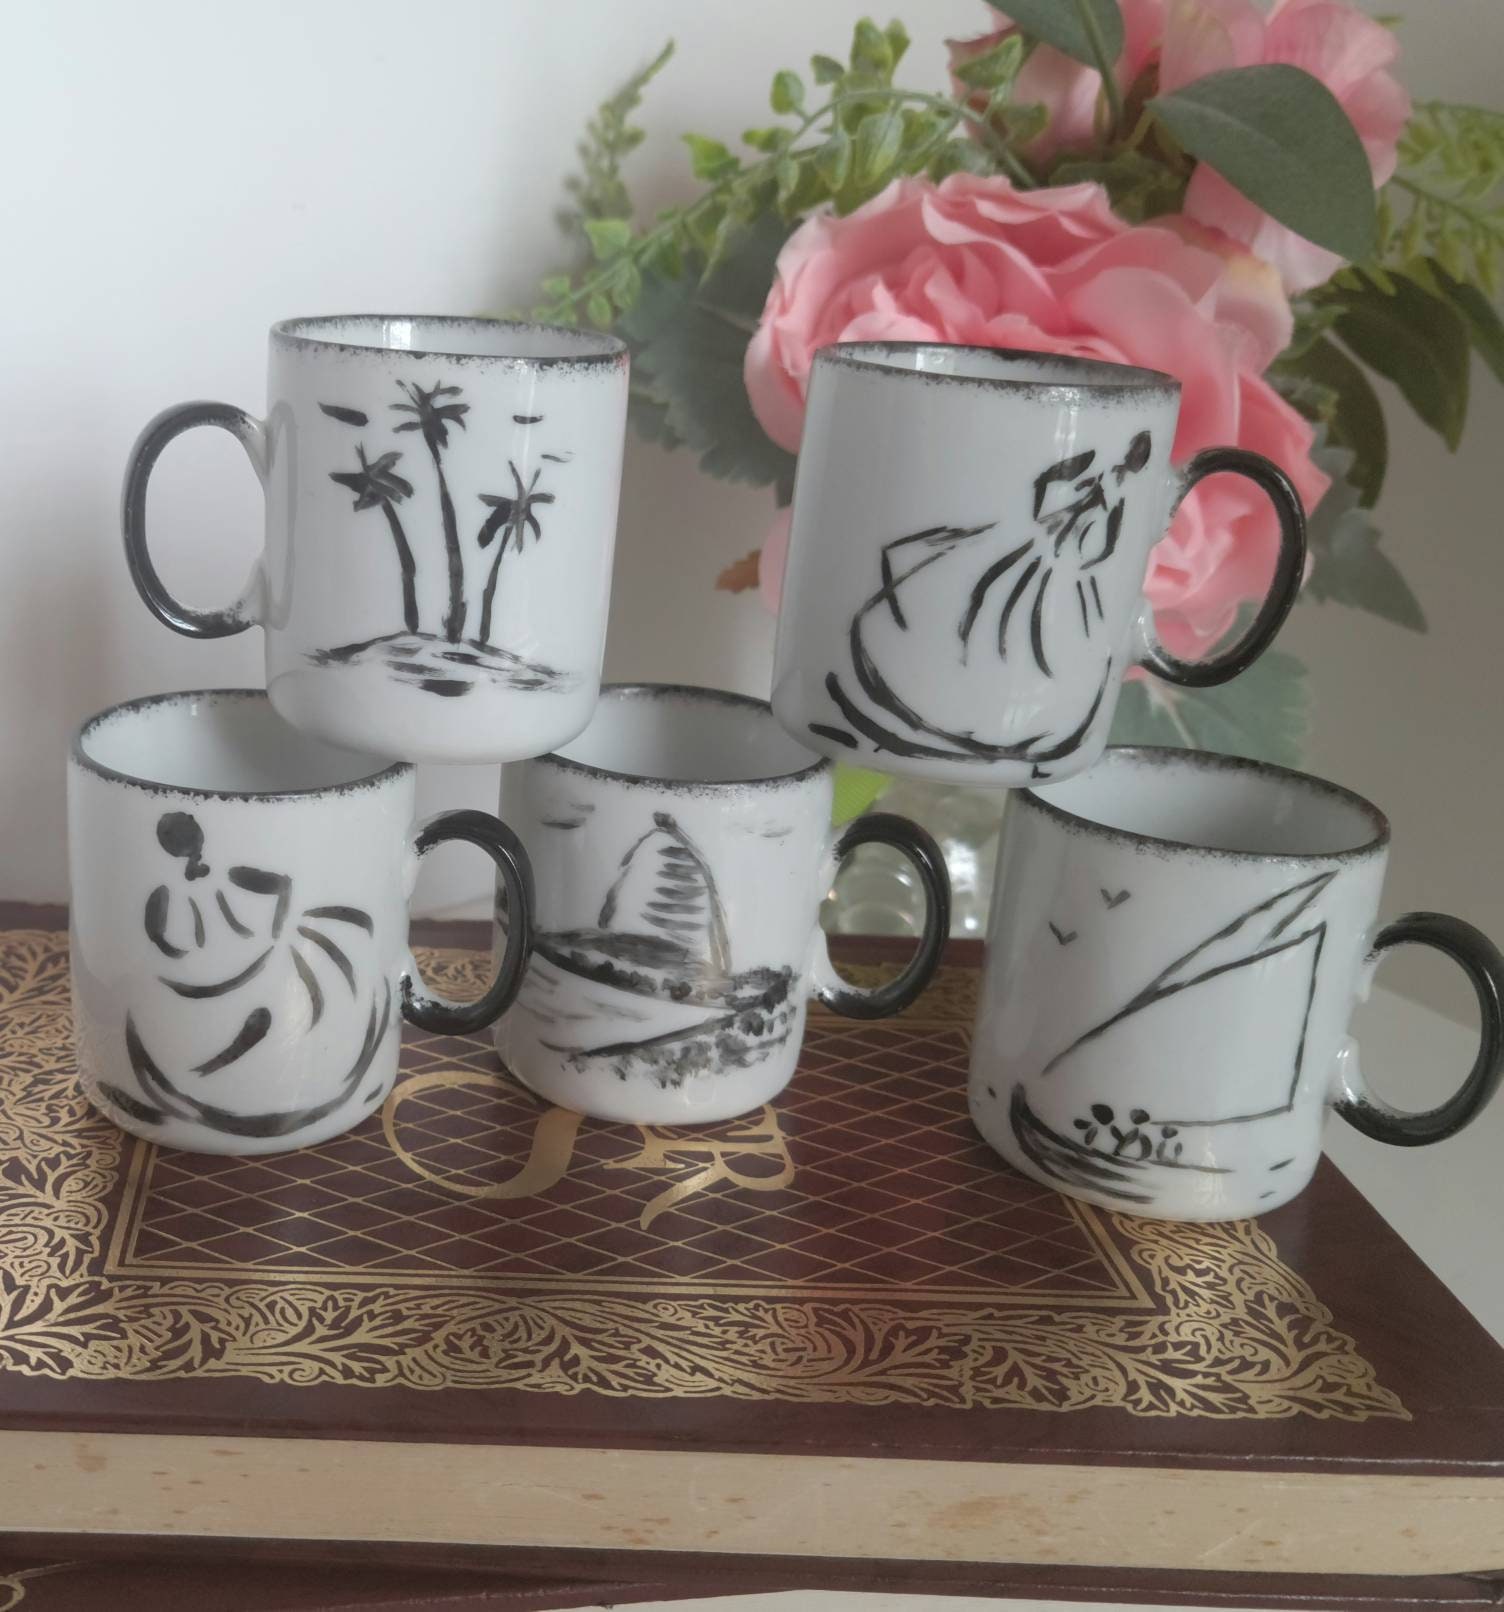 2oz Orange Espresso Cup and Saucer Extra Small Espresso Coffee Cup Glossy  Glaze Tiny Mug Art Gifts Edvard Munch the Scream 